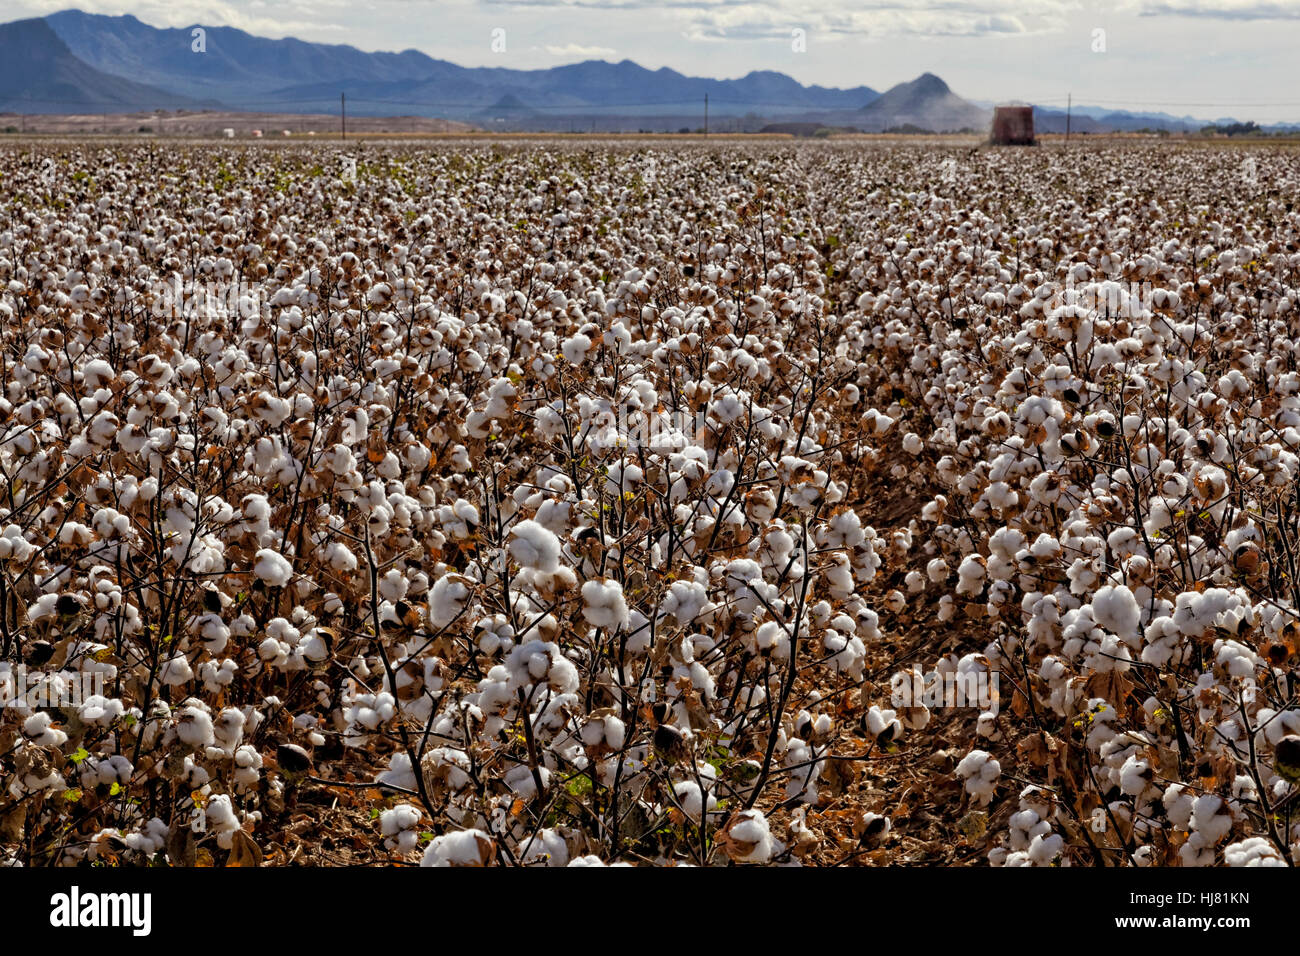 Prêts pour la récolte de coton - Agriculture - Marana, Arizona Banque D'Images